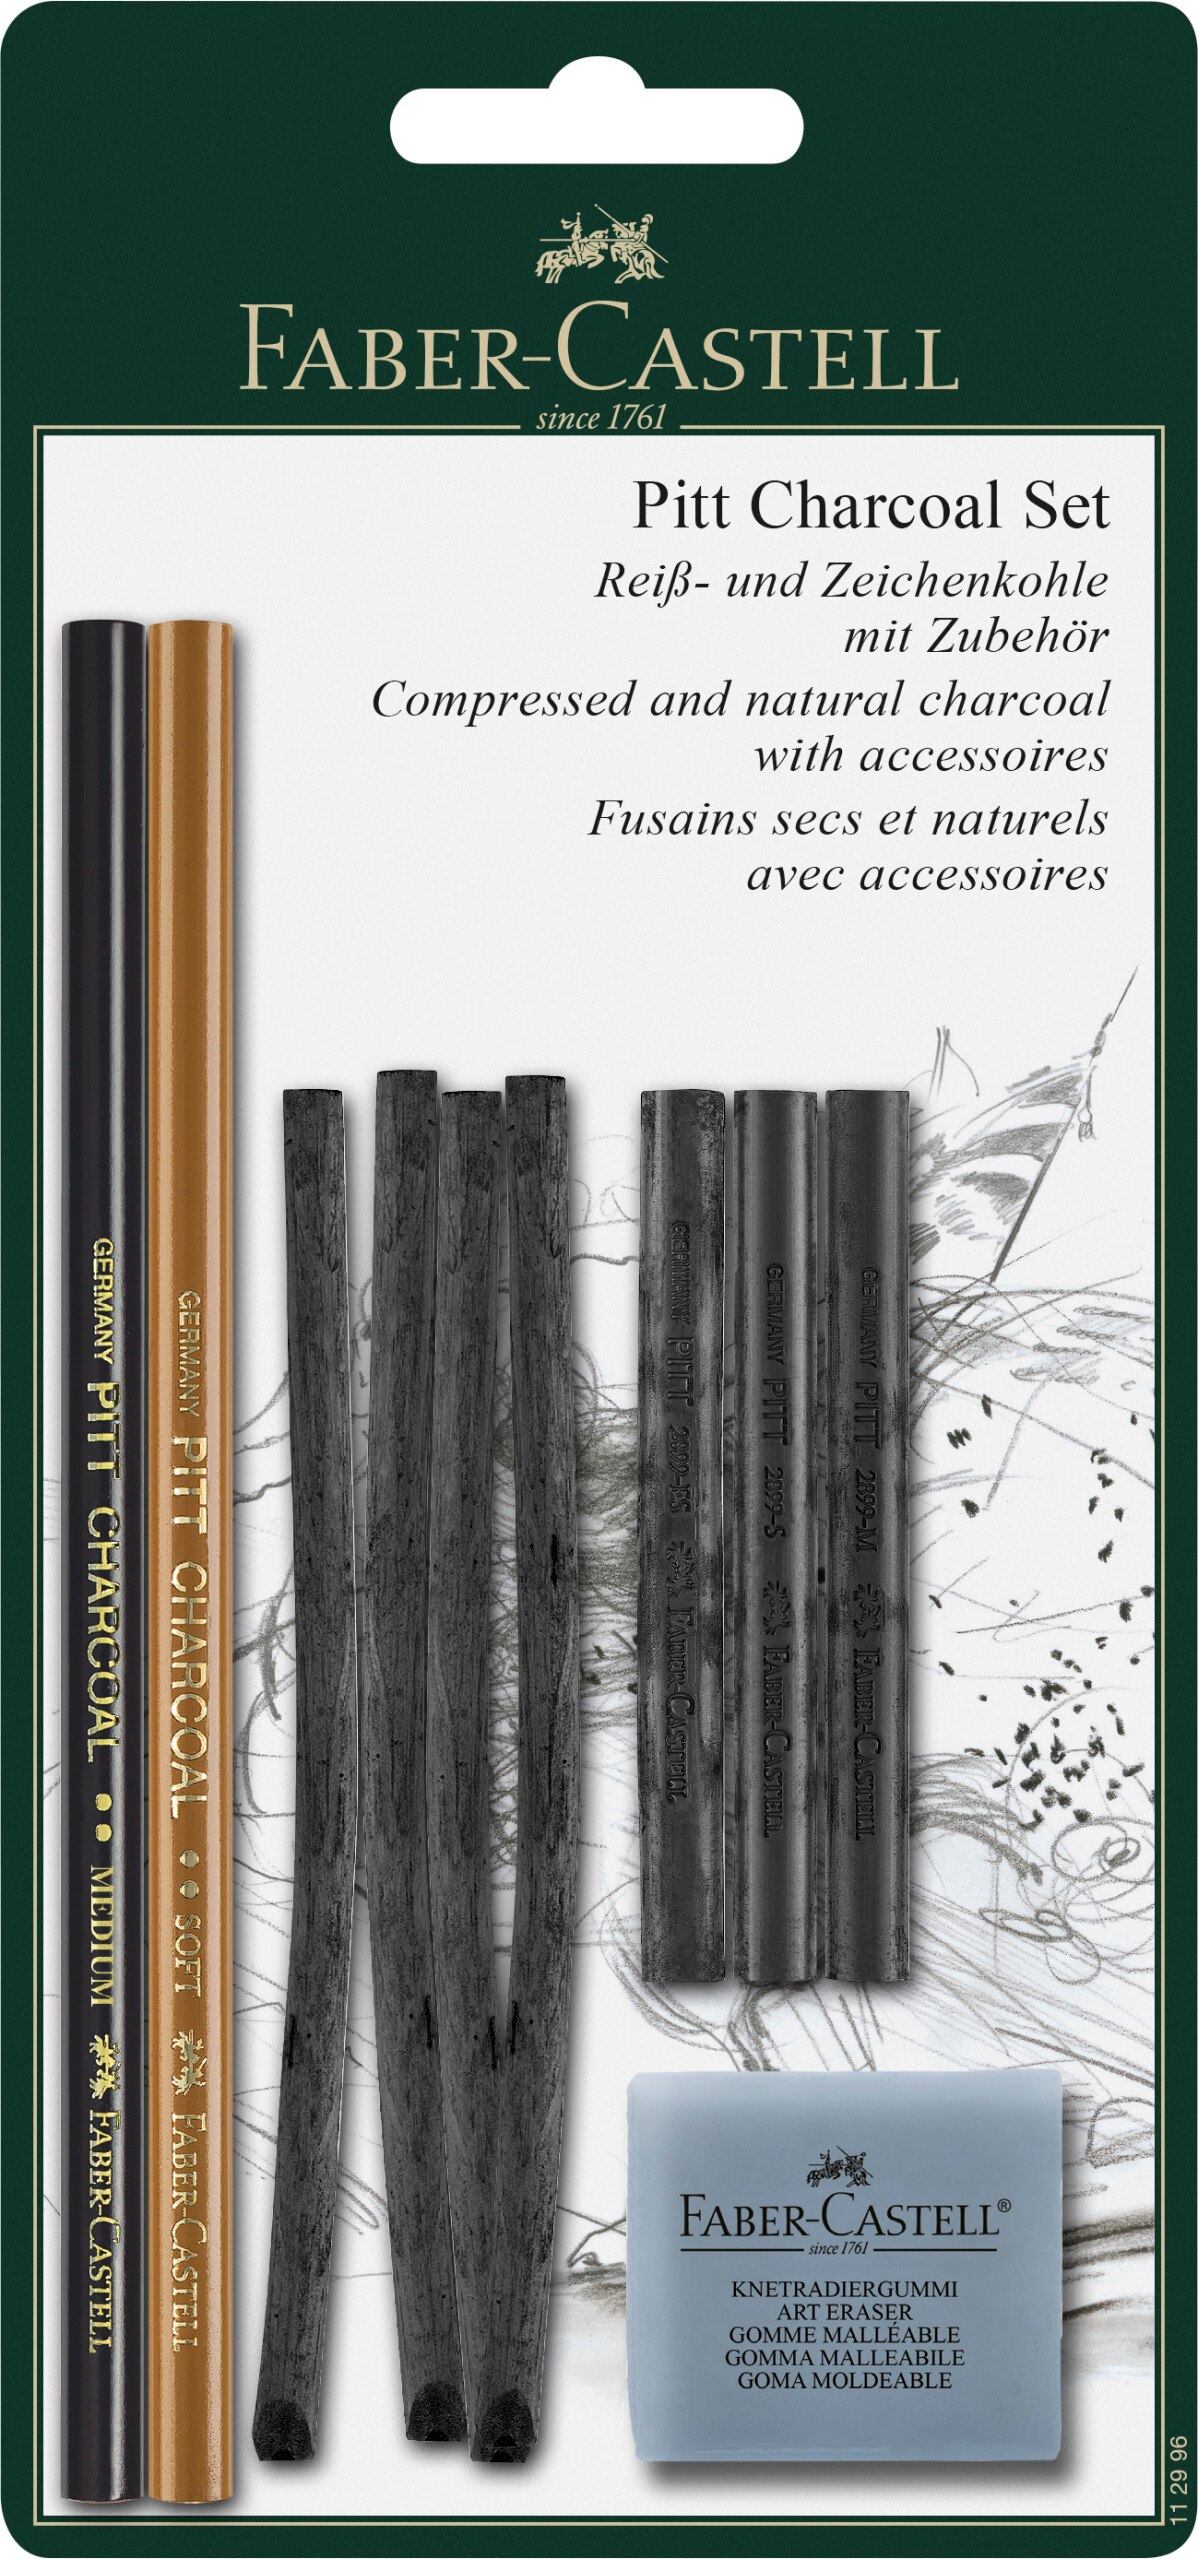 Faber-Castell PITT Charcoal Tin Set, 10-Pencils